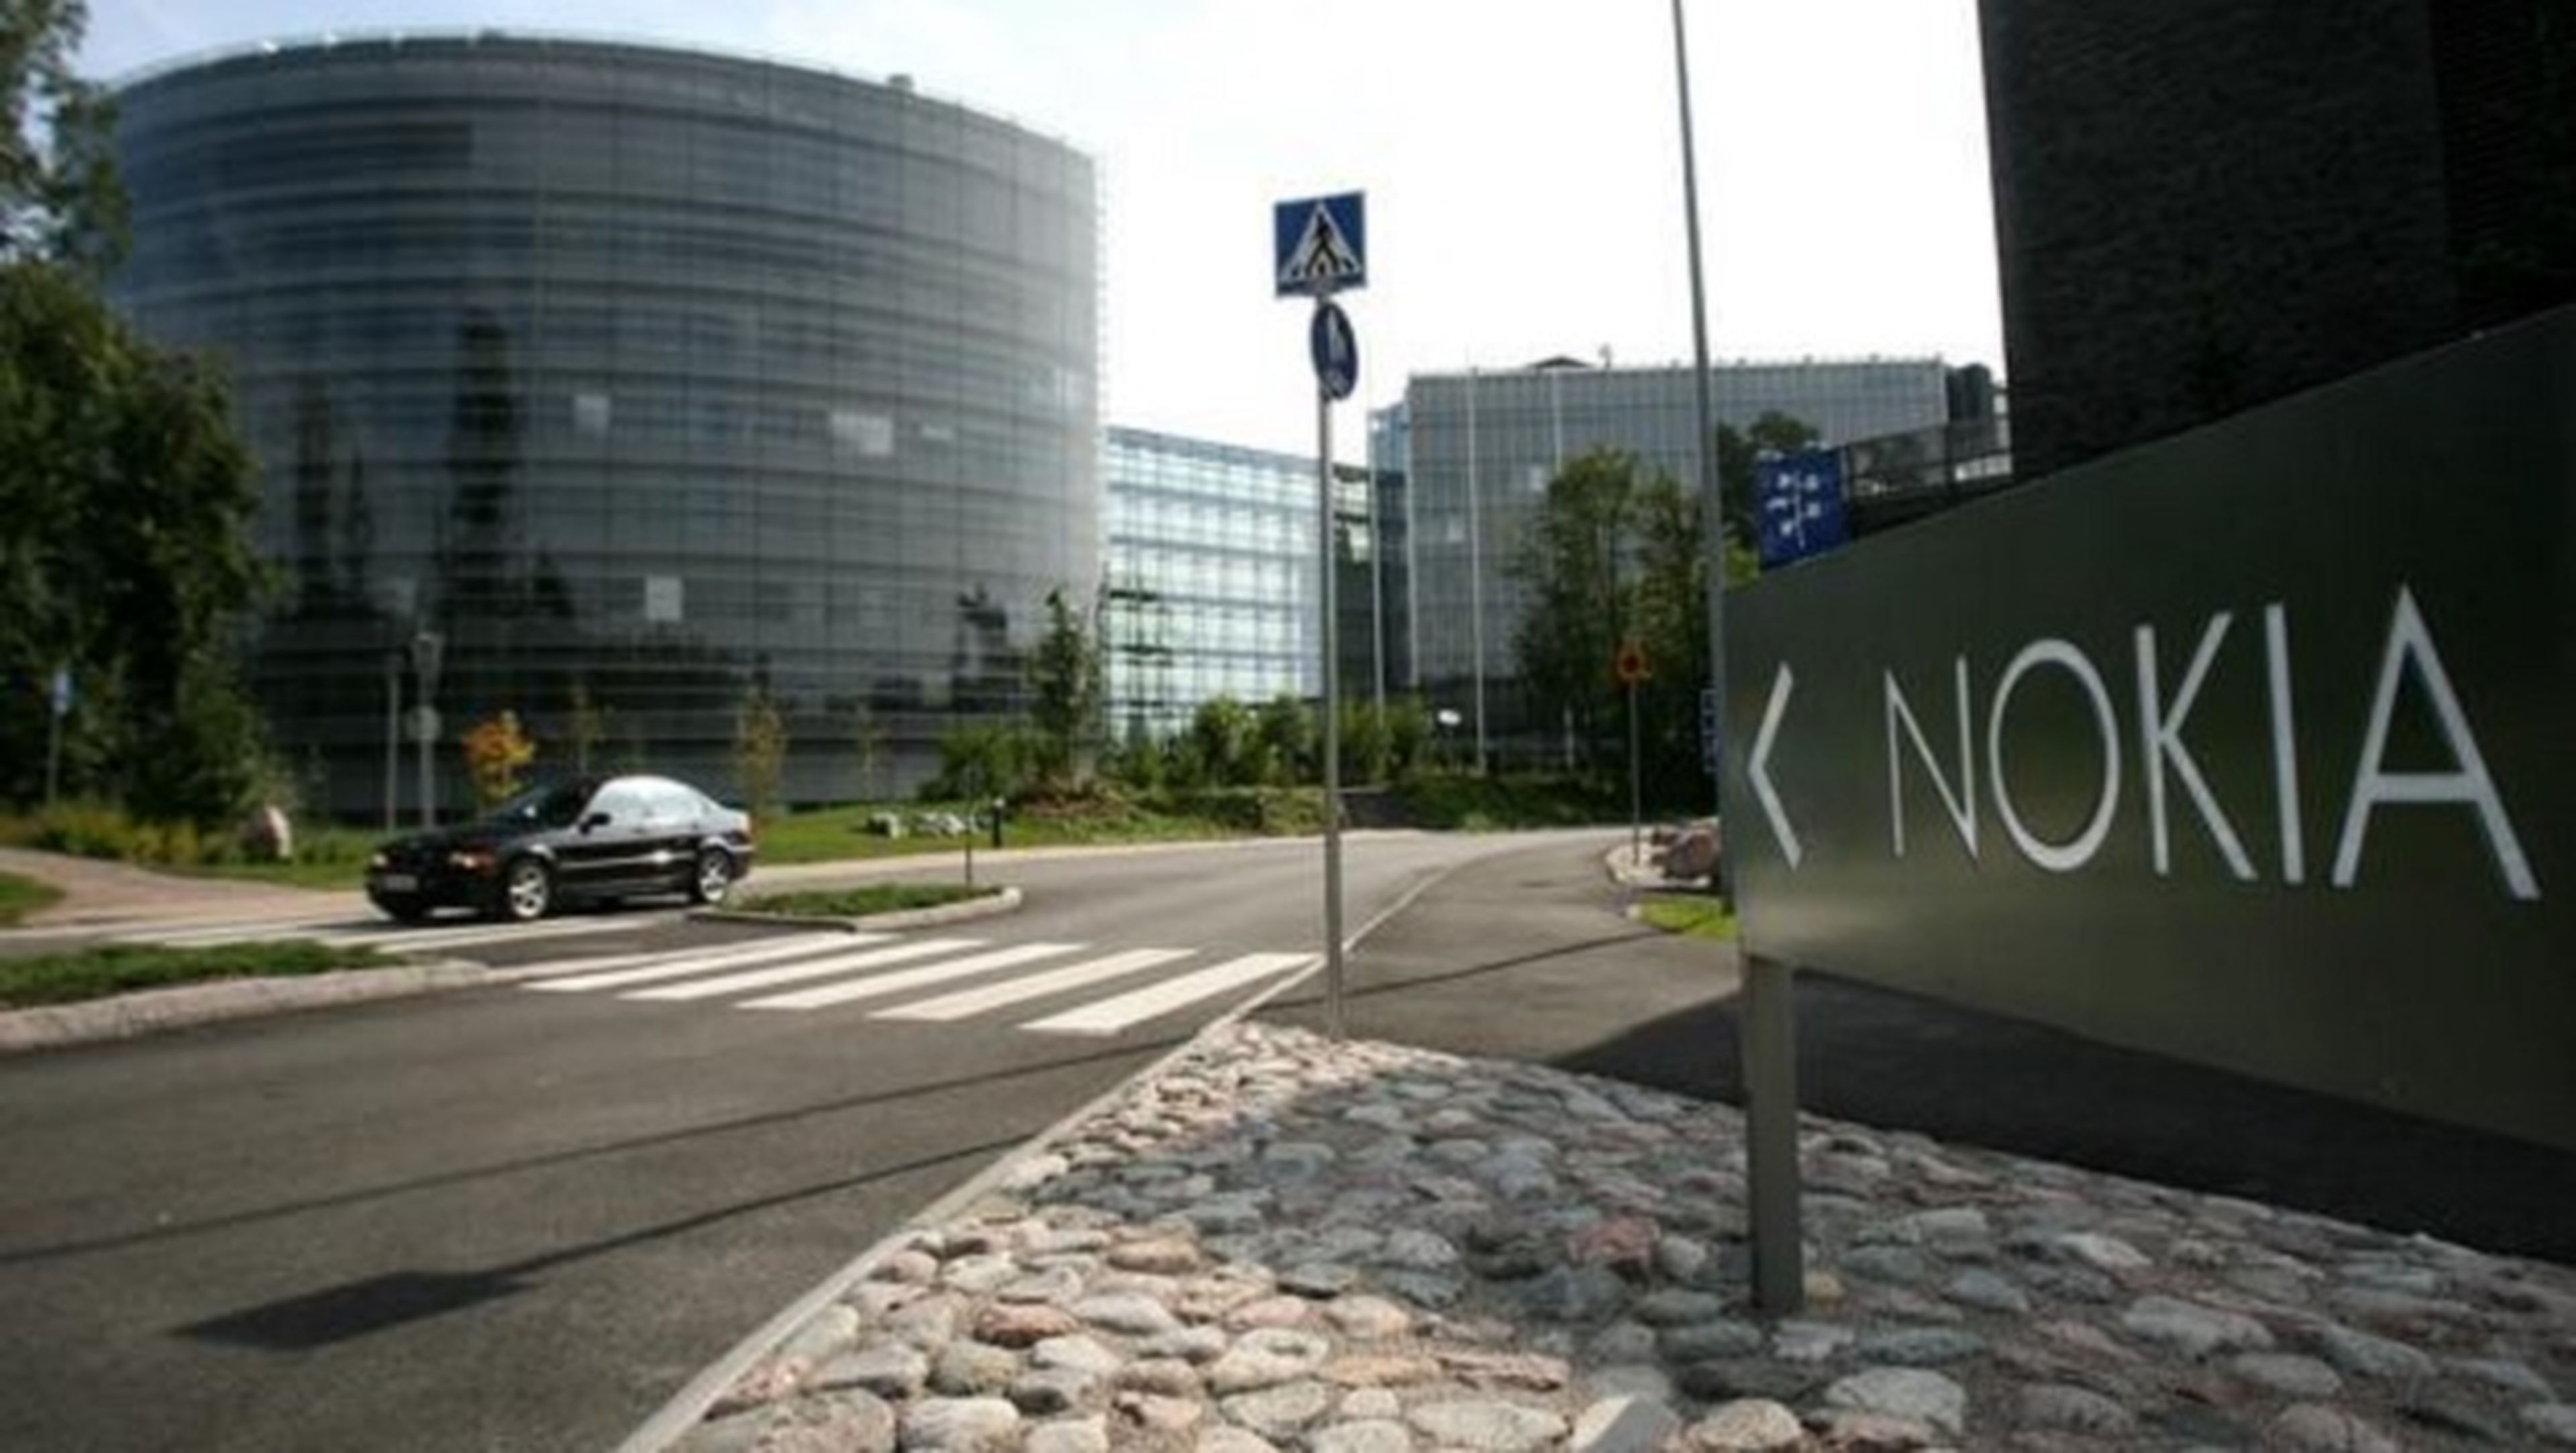 Oficinas de Nokia en Finlandia